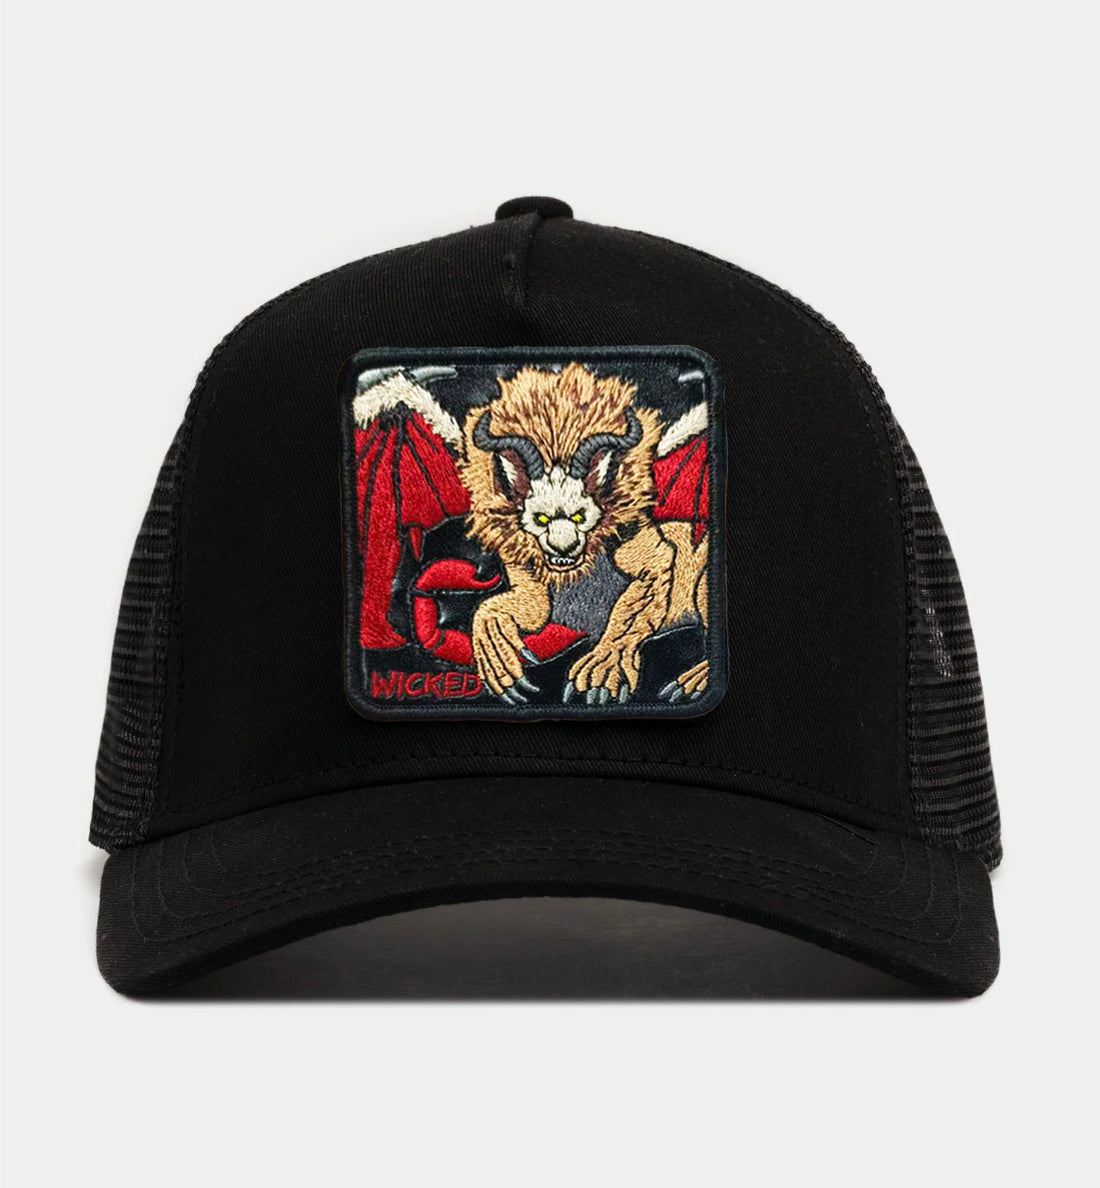 Manticore "wicked" Trucker Hat